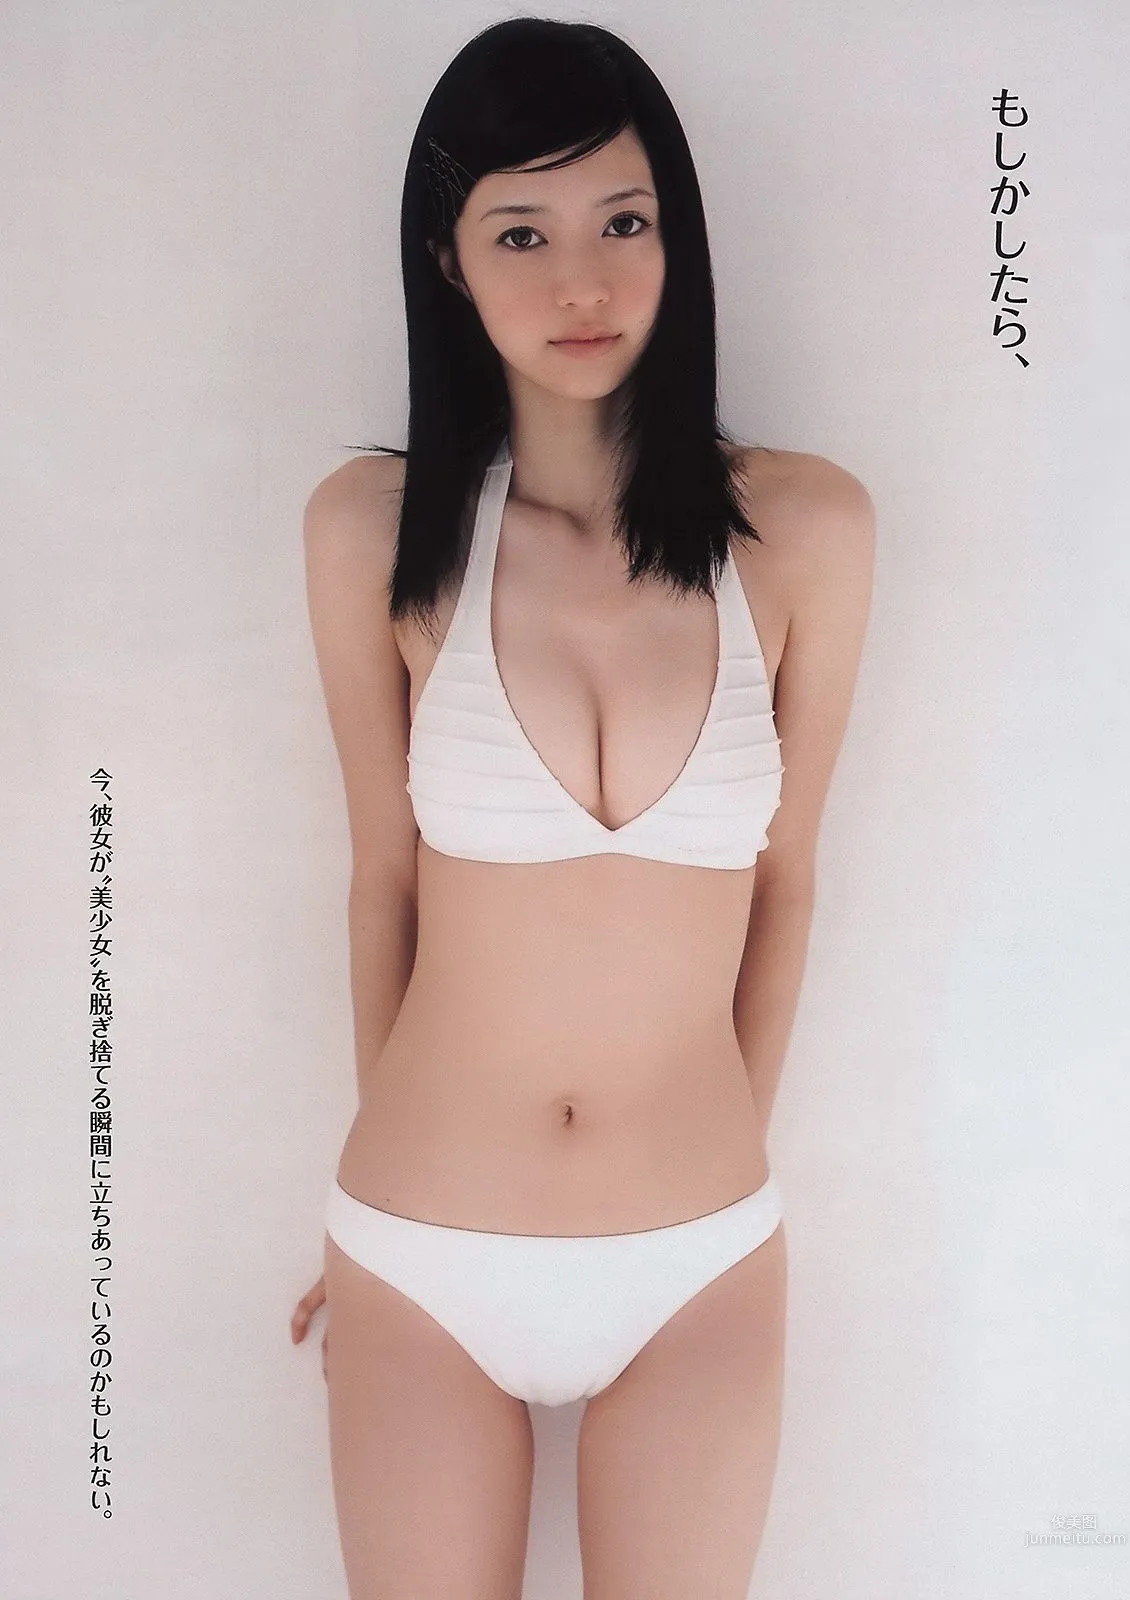 佐々木希 逢沢りな 次原かな NMB48 おかもとまり [Weekly Playboy] 2011年No.11 写真杂志10